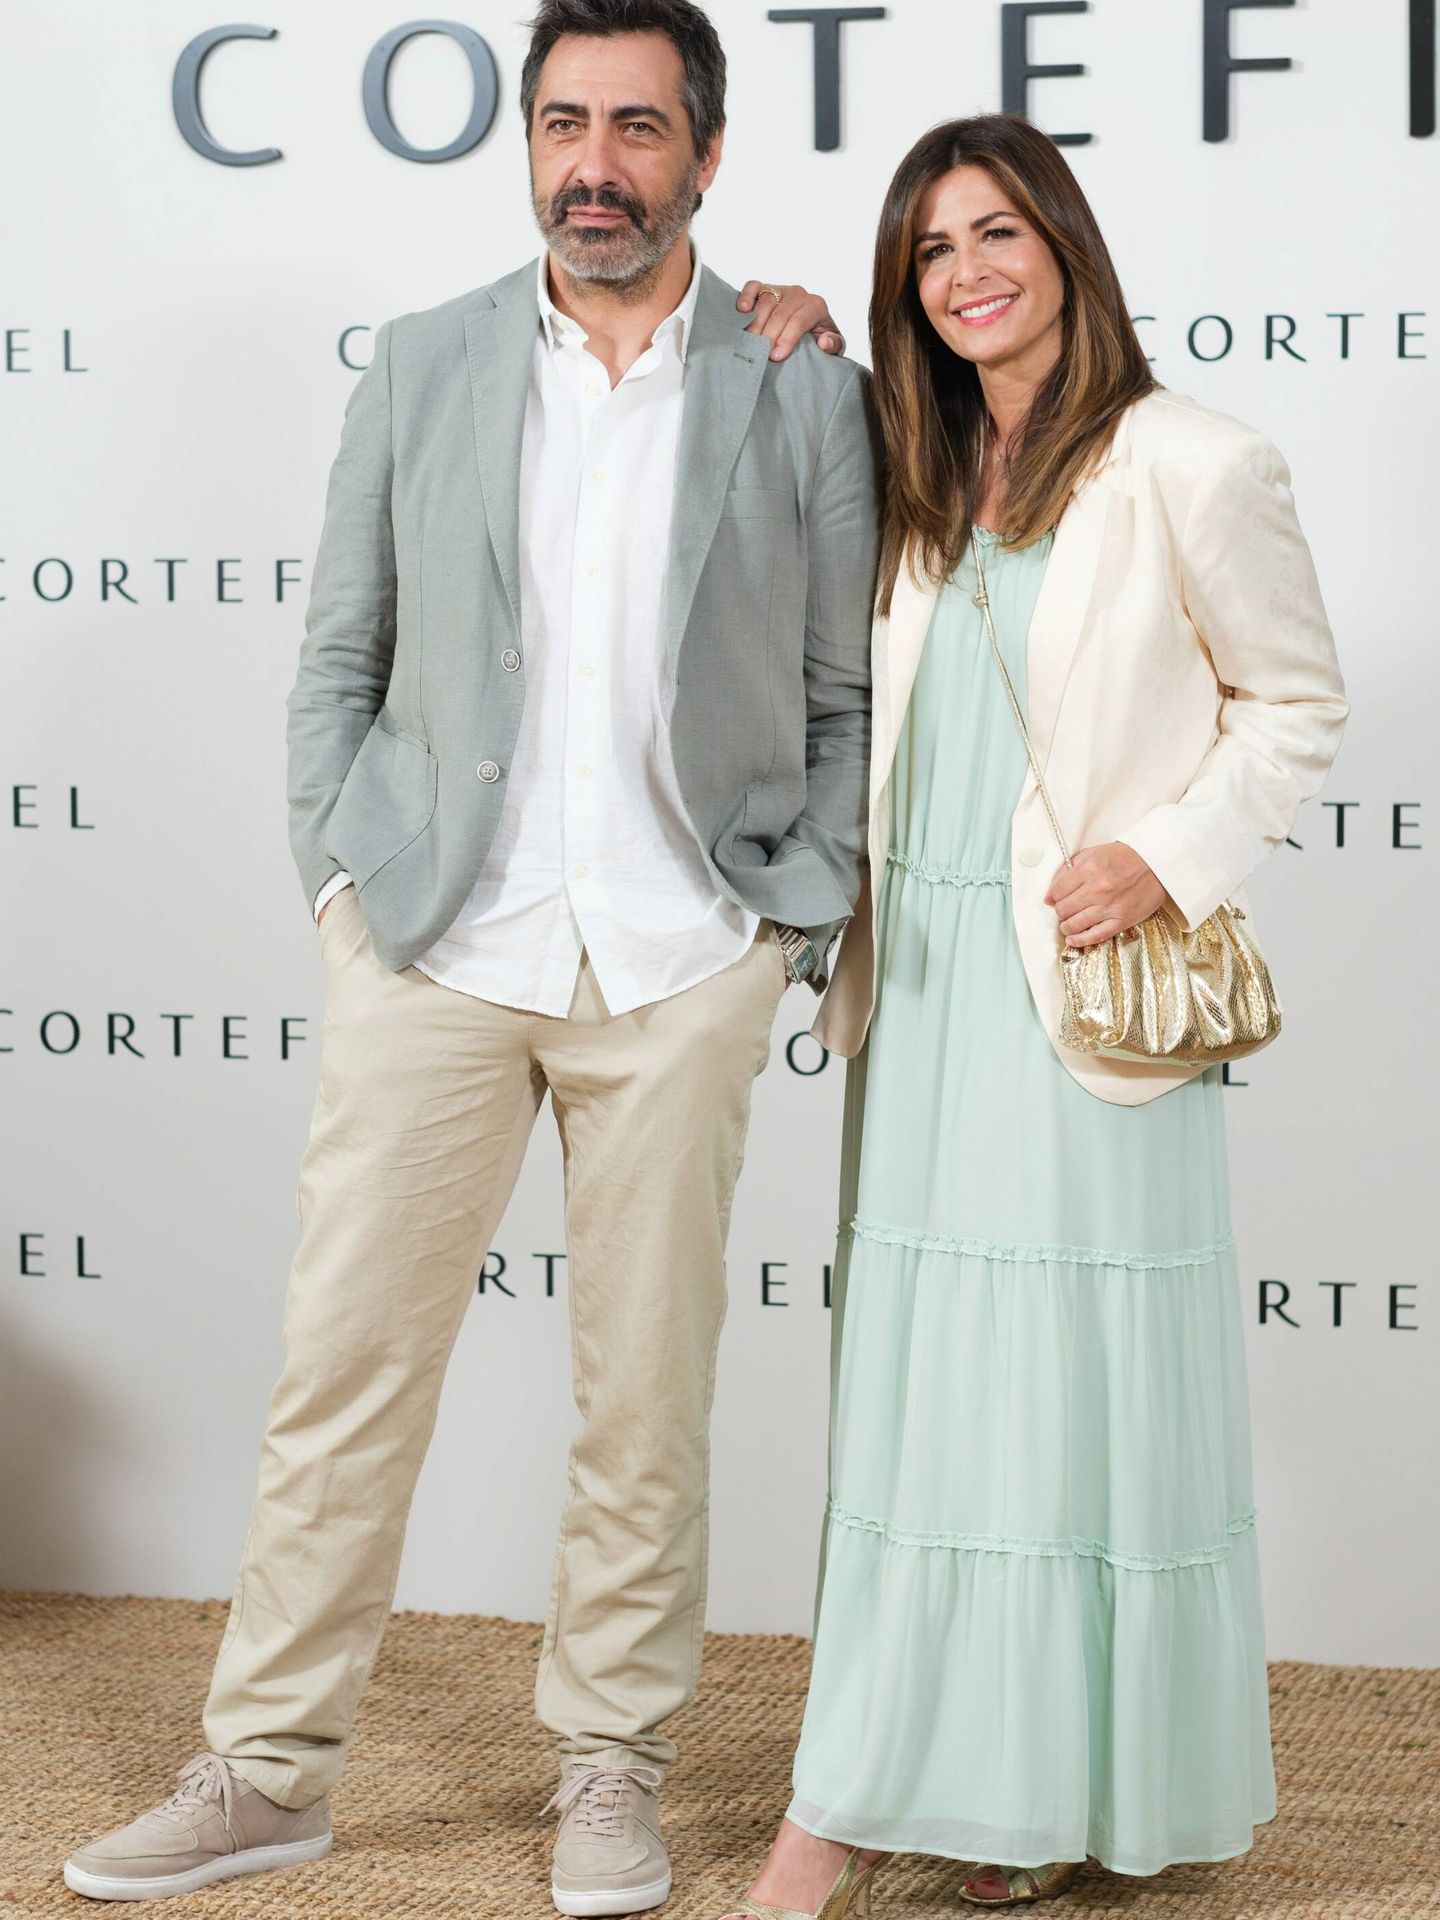 Nuria Roca y Juan del Val son dos de los protagonistas de la nueva campaña. (Cordon Press)